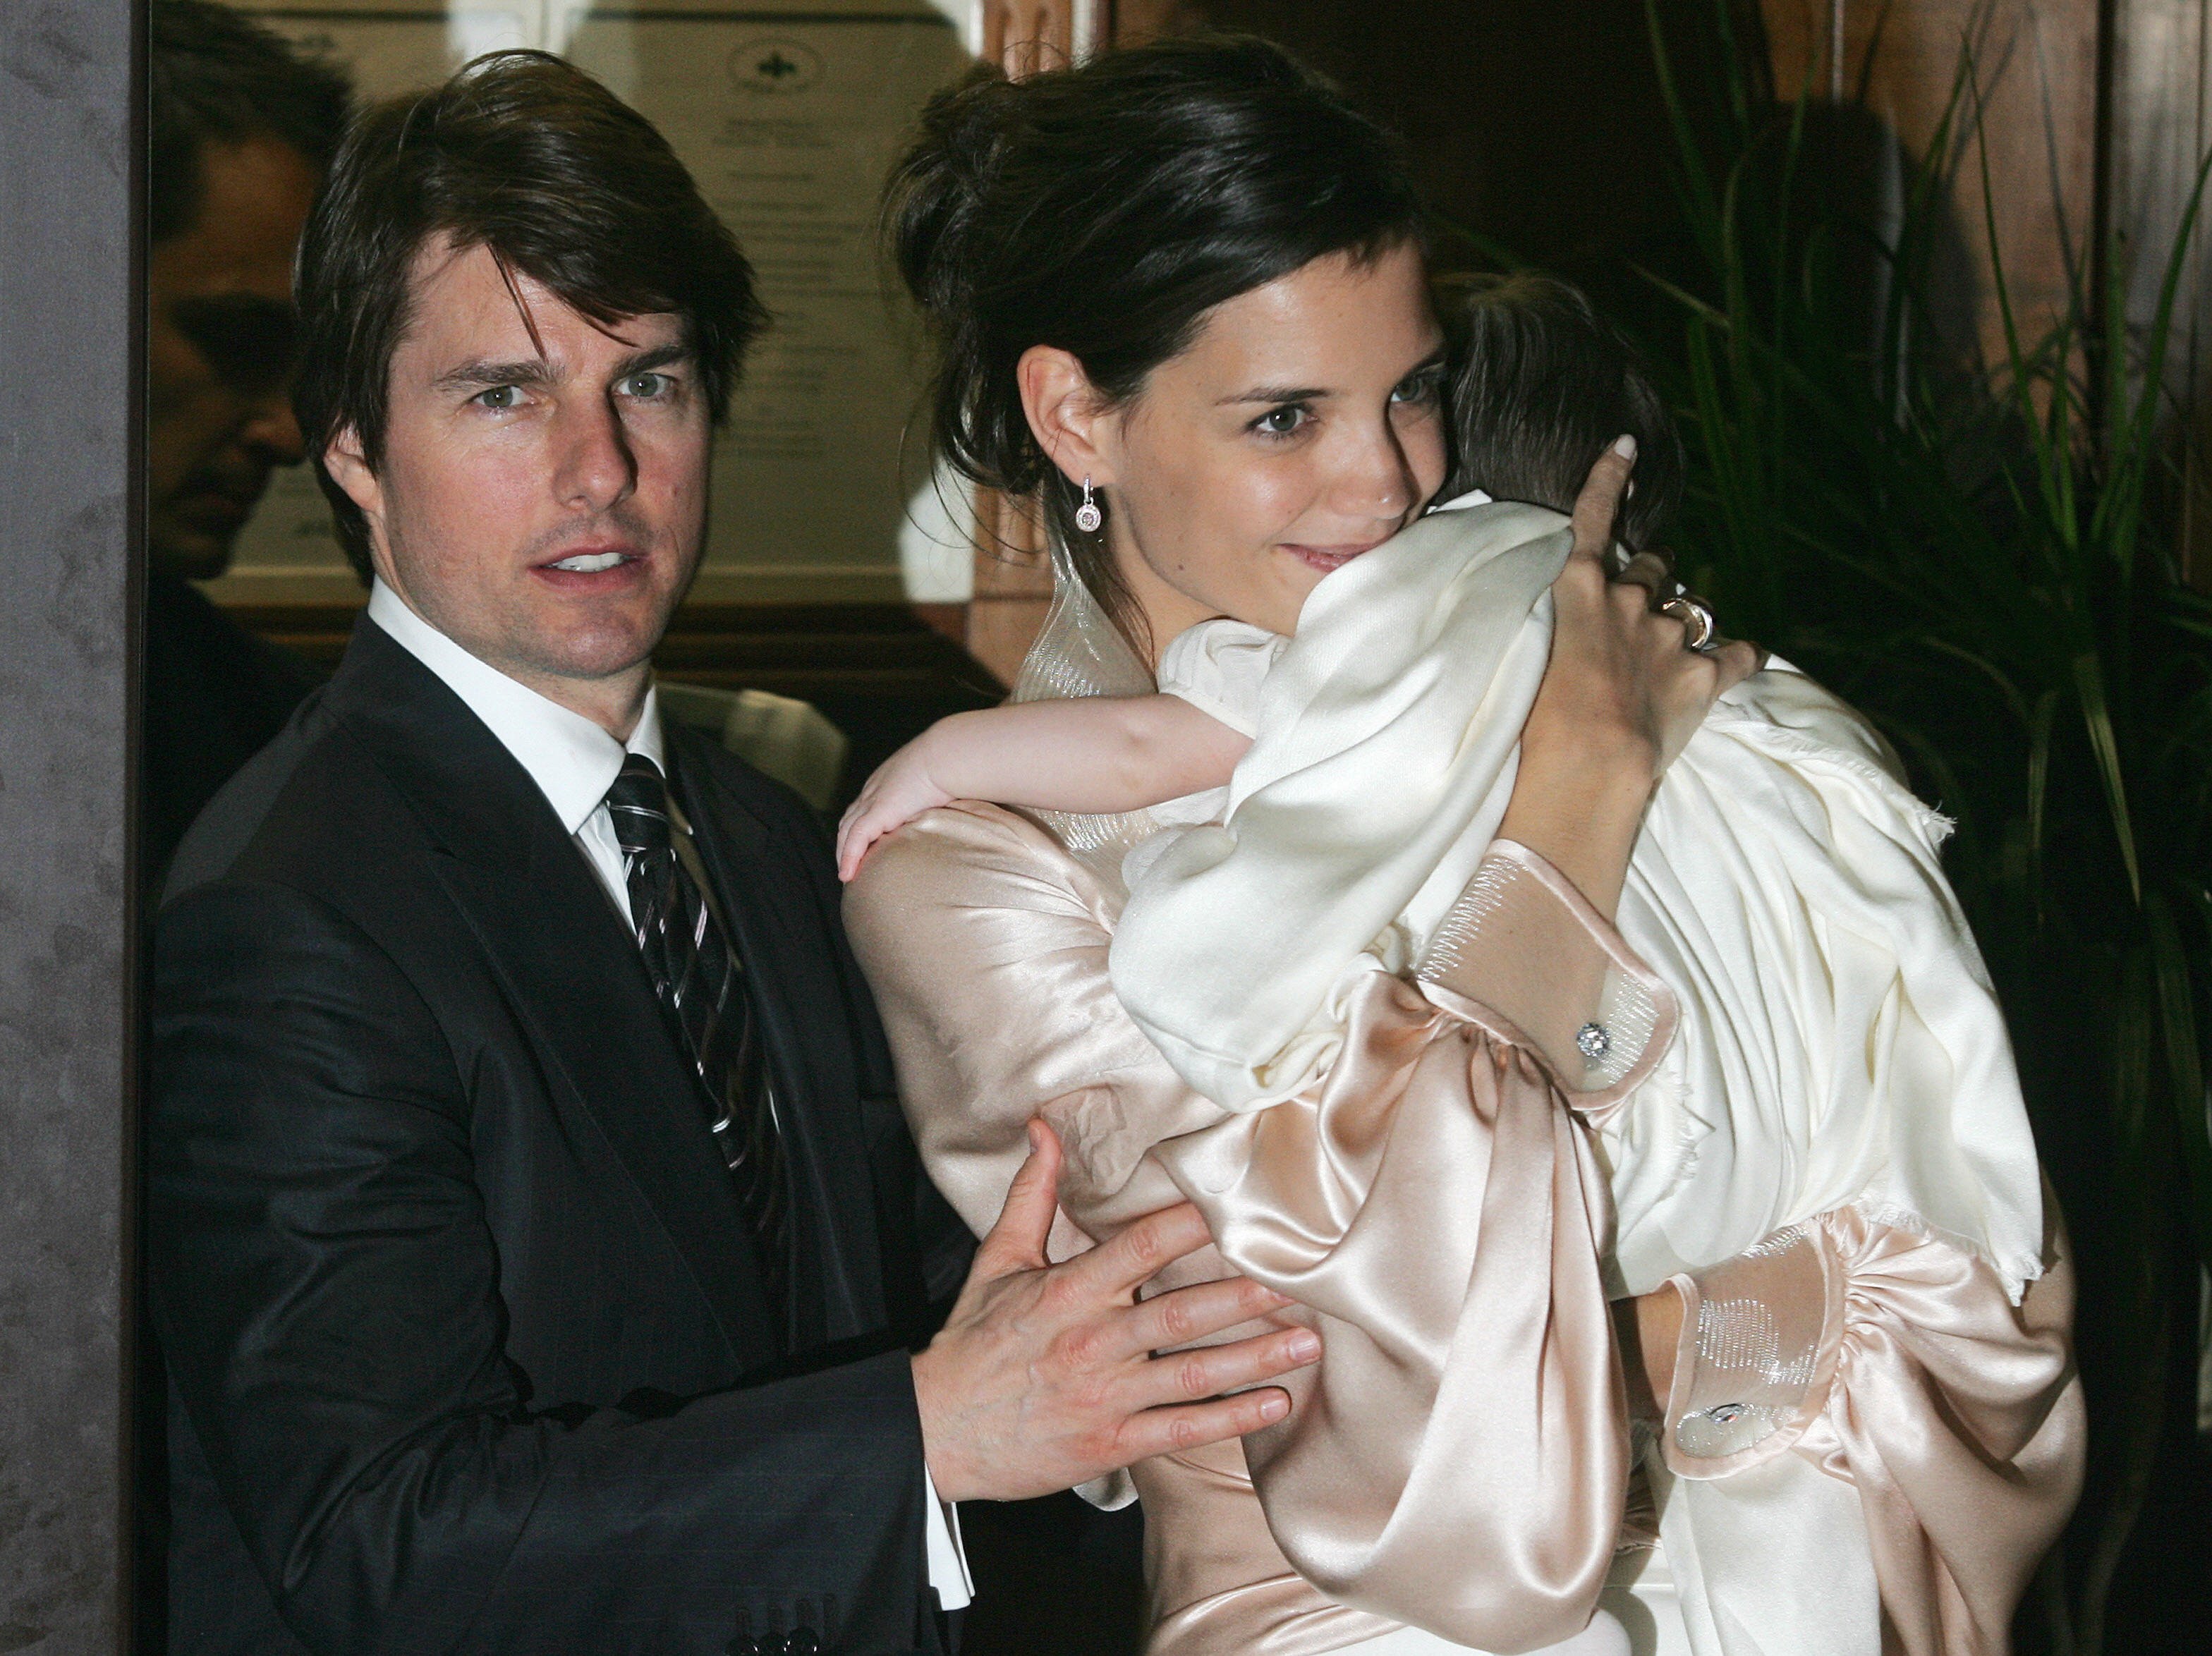 Tom Cruise und Katie Holmes verlassen mit ihrer Tochter Suri ein Restaurant am 17. November 2006 in Rom, Italien. | Quelle: Getty Images